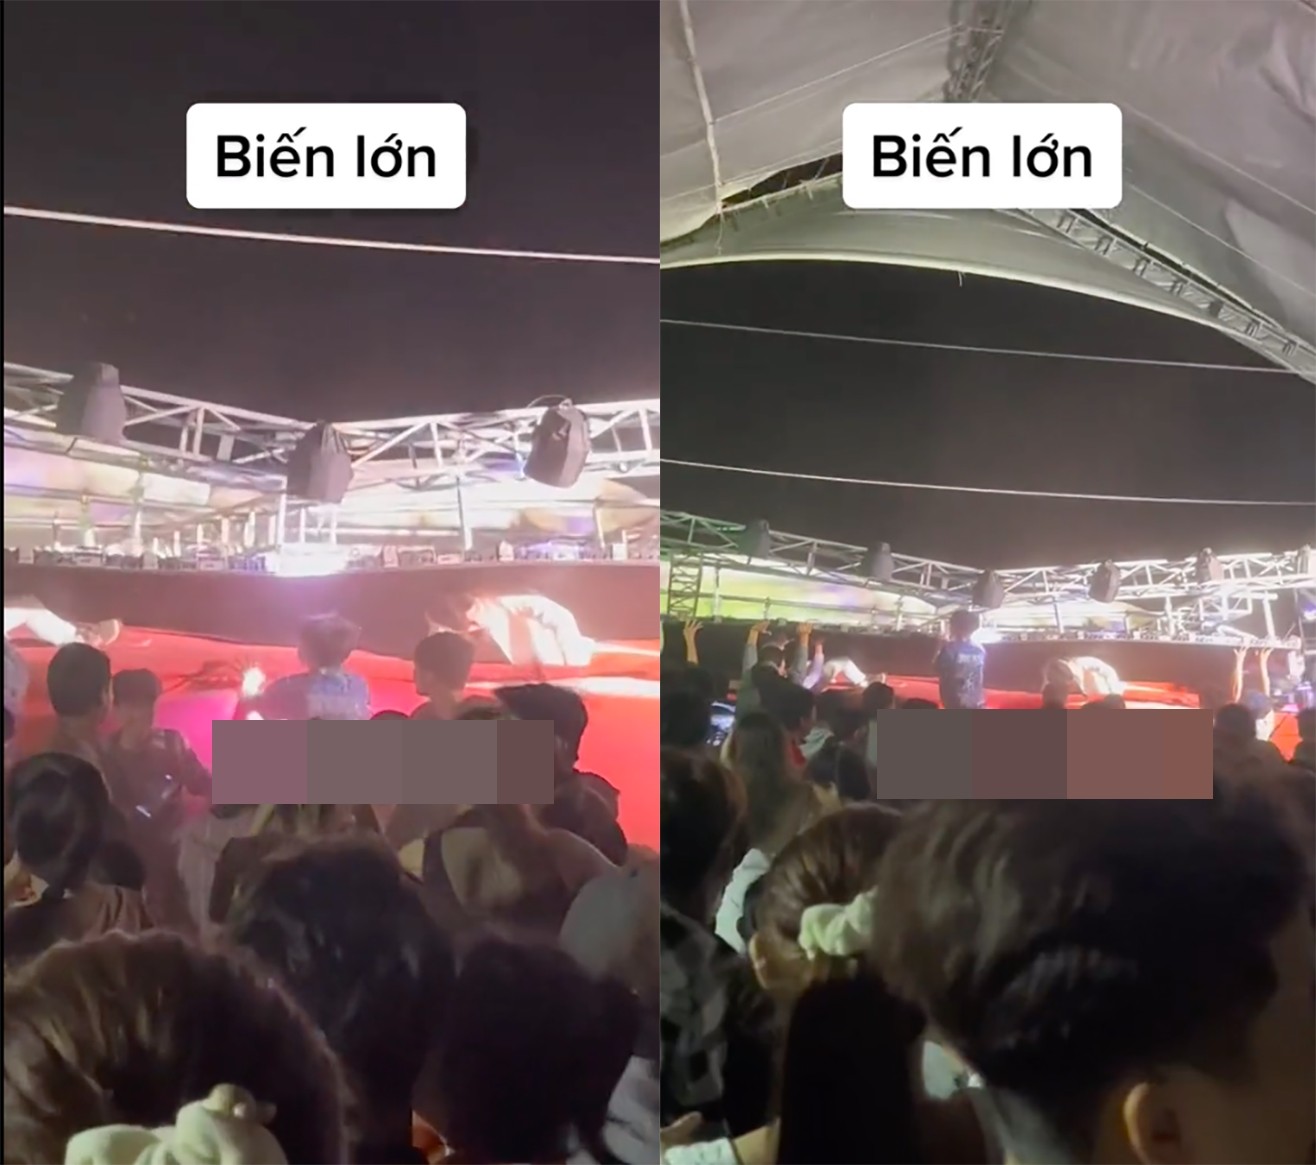 Ca sĩ nhóm HKT và vũ công bị màn hình led đổ đè trúng người khi đang hát